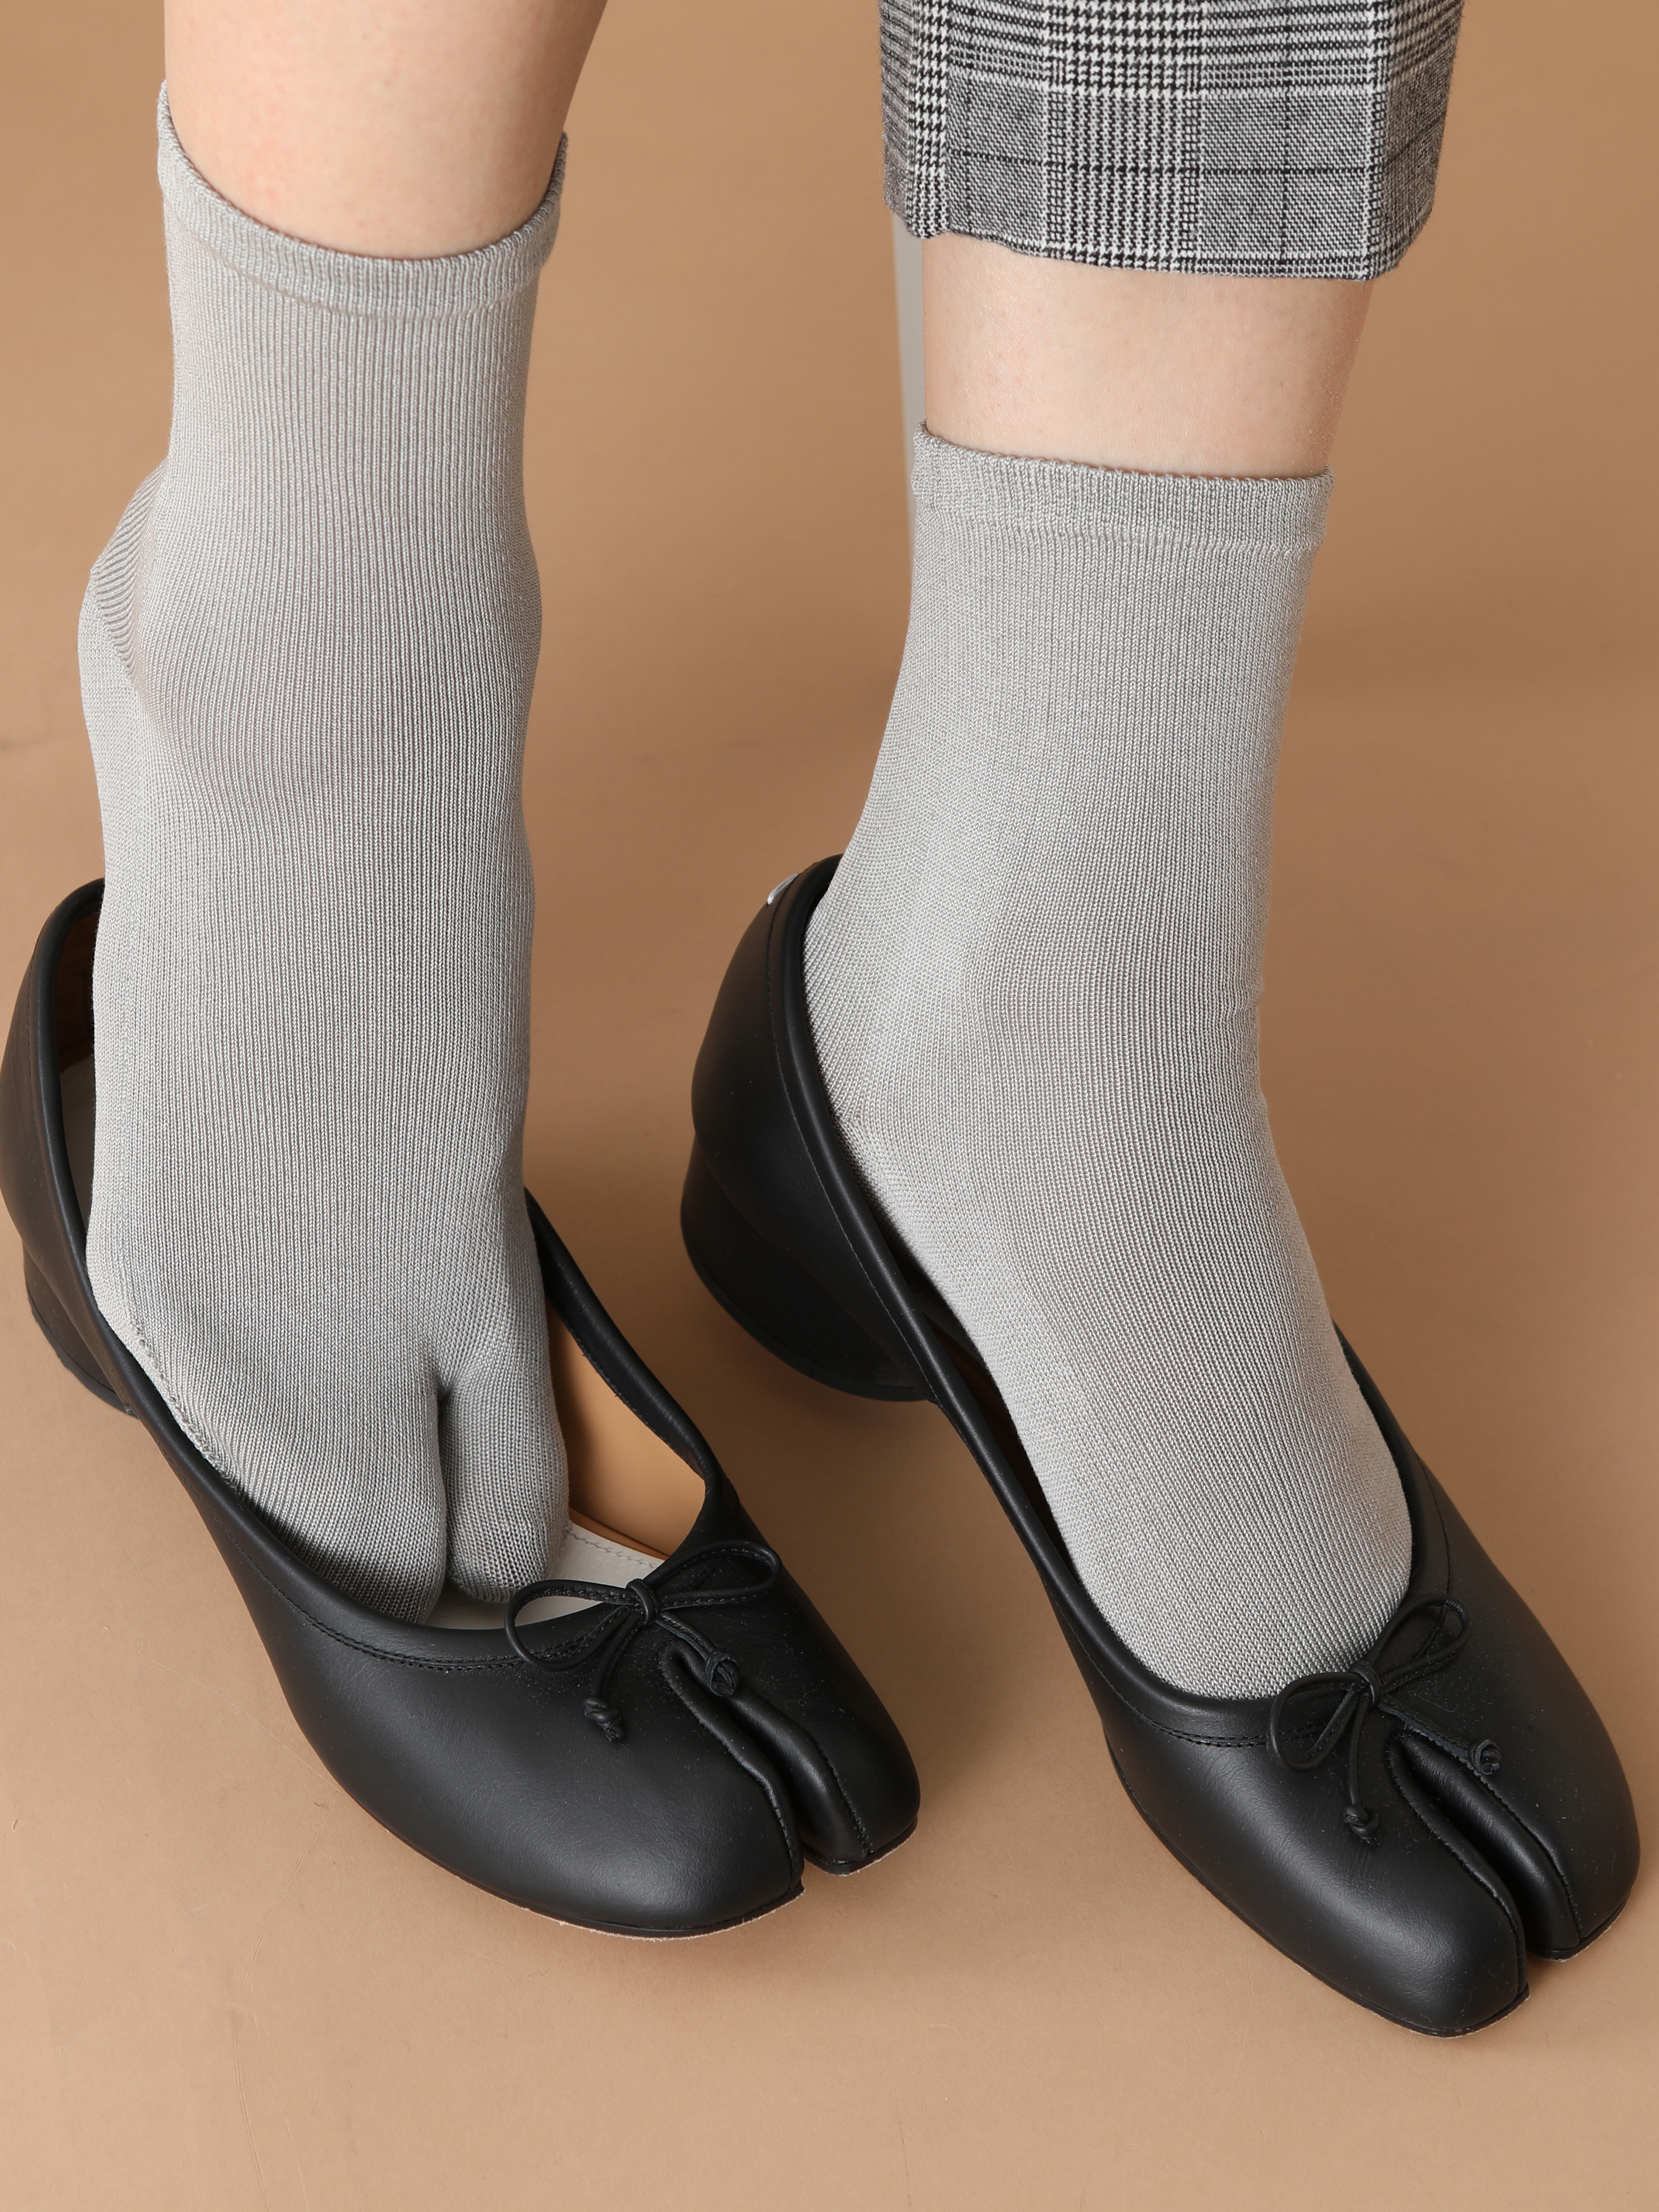 薄手の綿足袋ショートソックス ( 021131632 ) | 靴下屋公式通販 Tabio オンラインストア